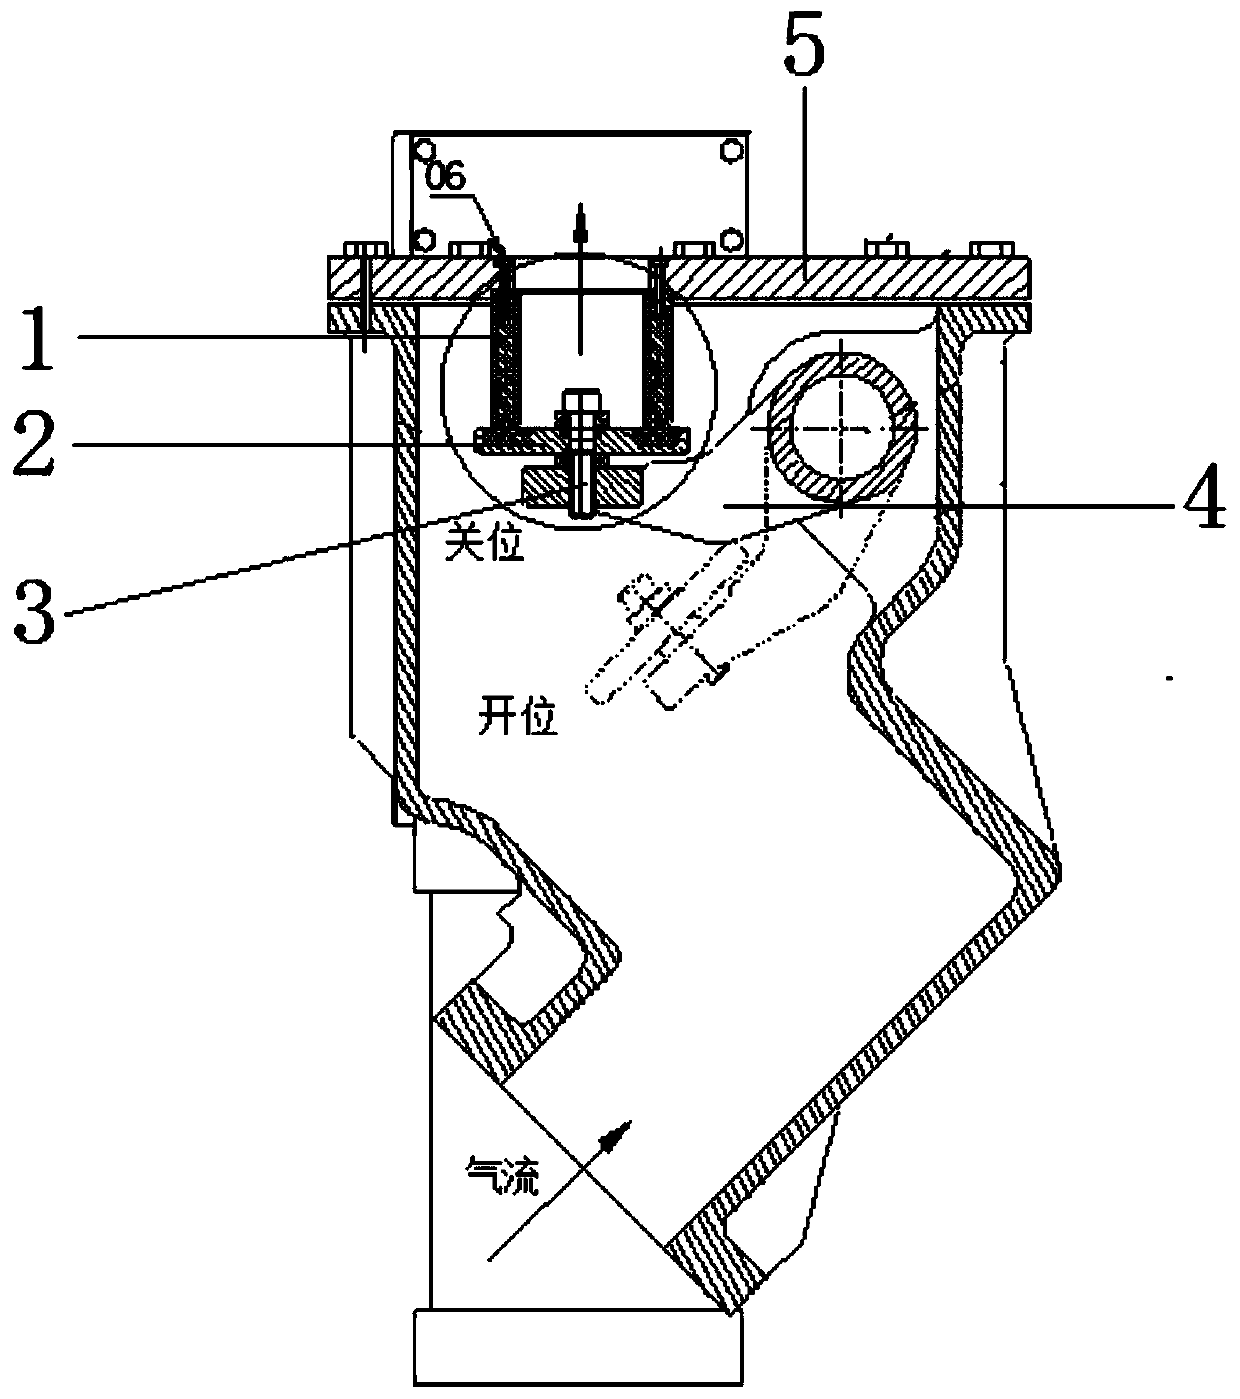 Rotary exhaust valve